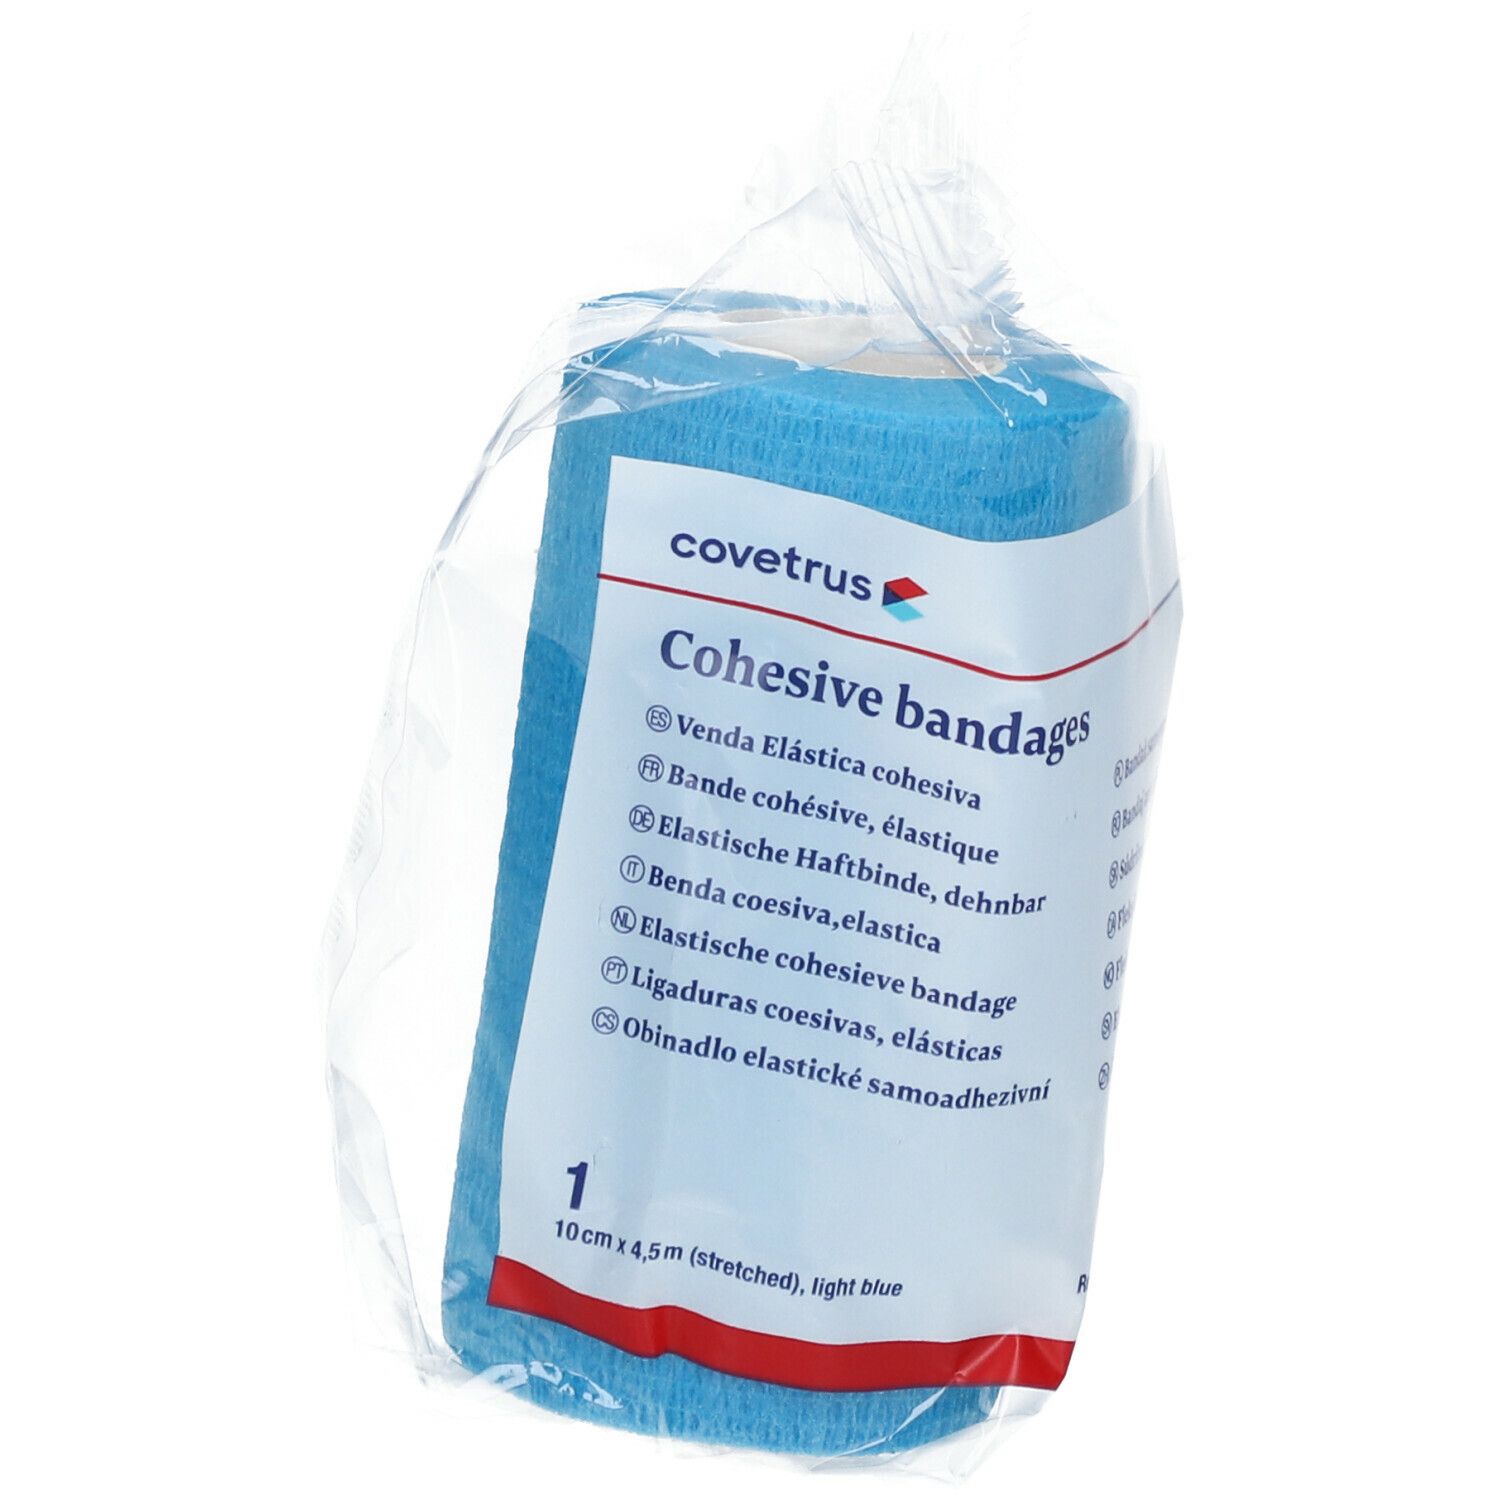 covetrus Cohesive bandages 10cm x 4,5m light blue